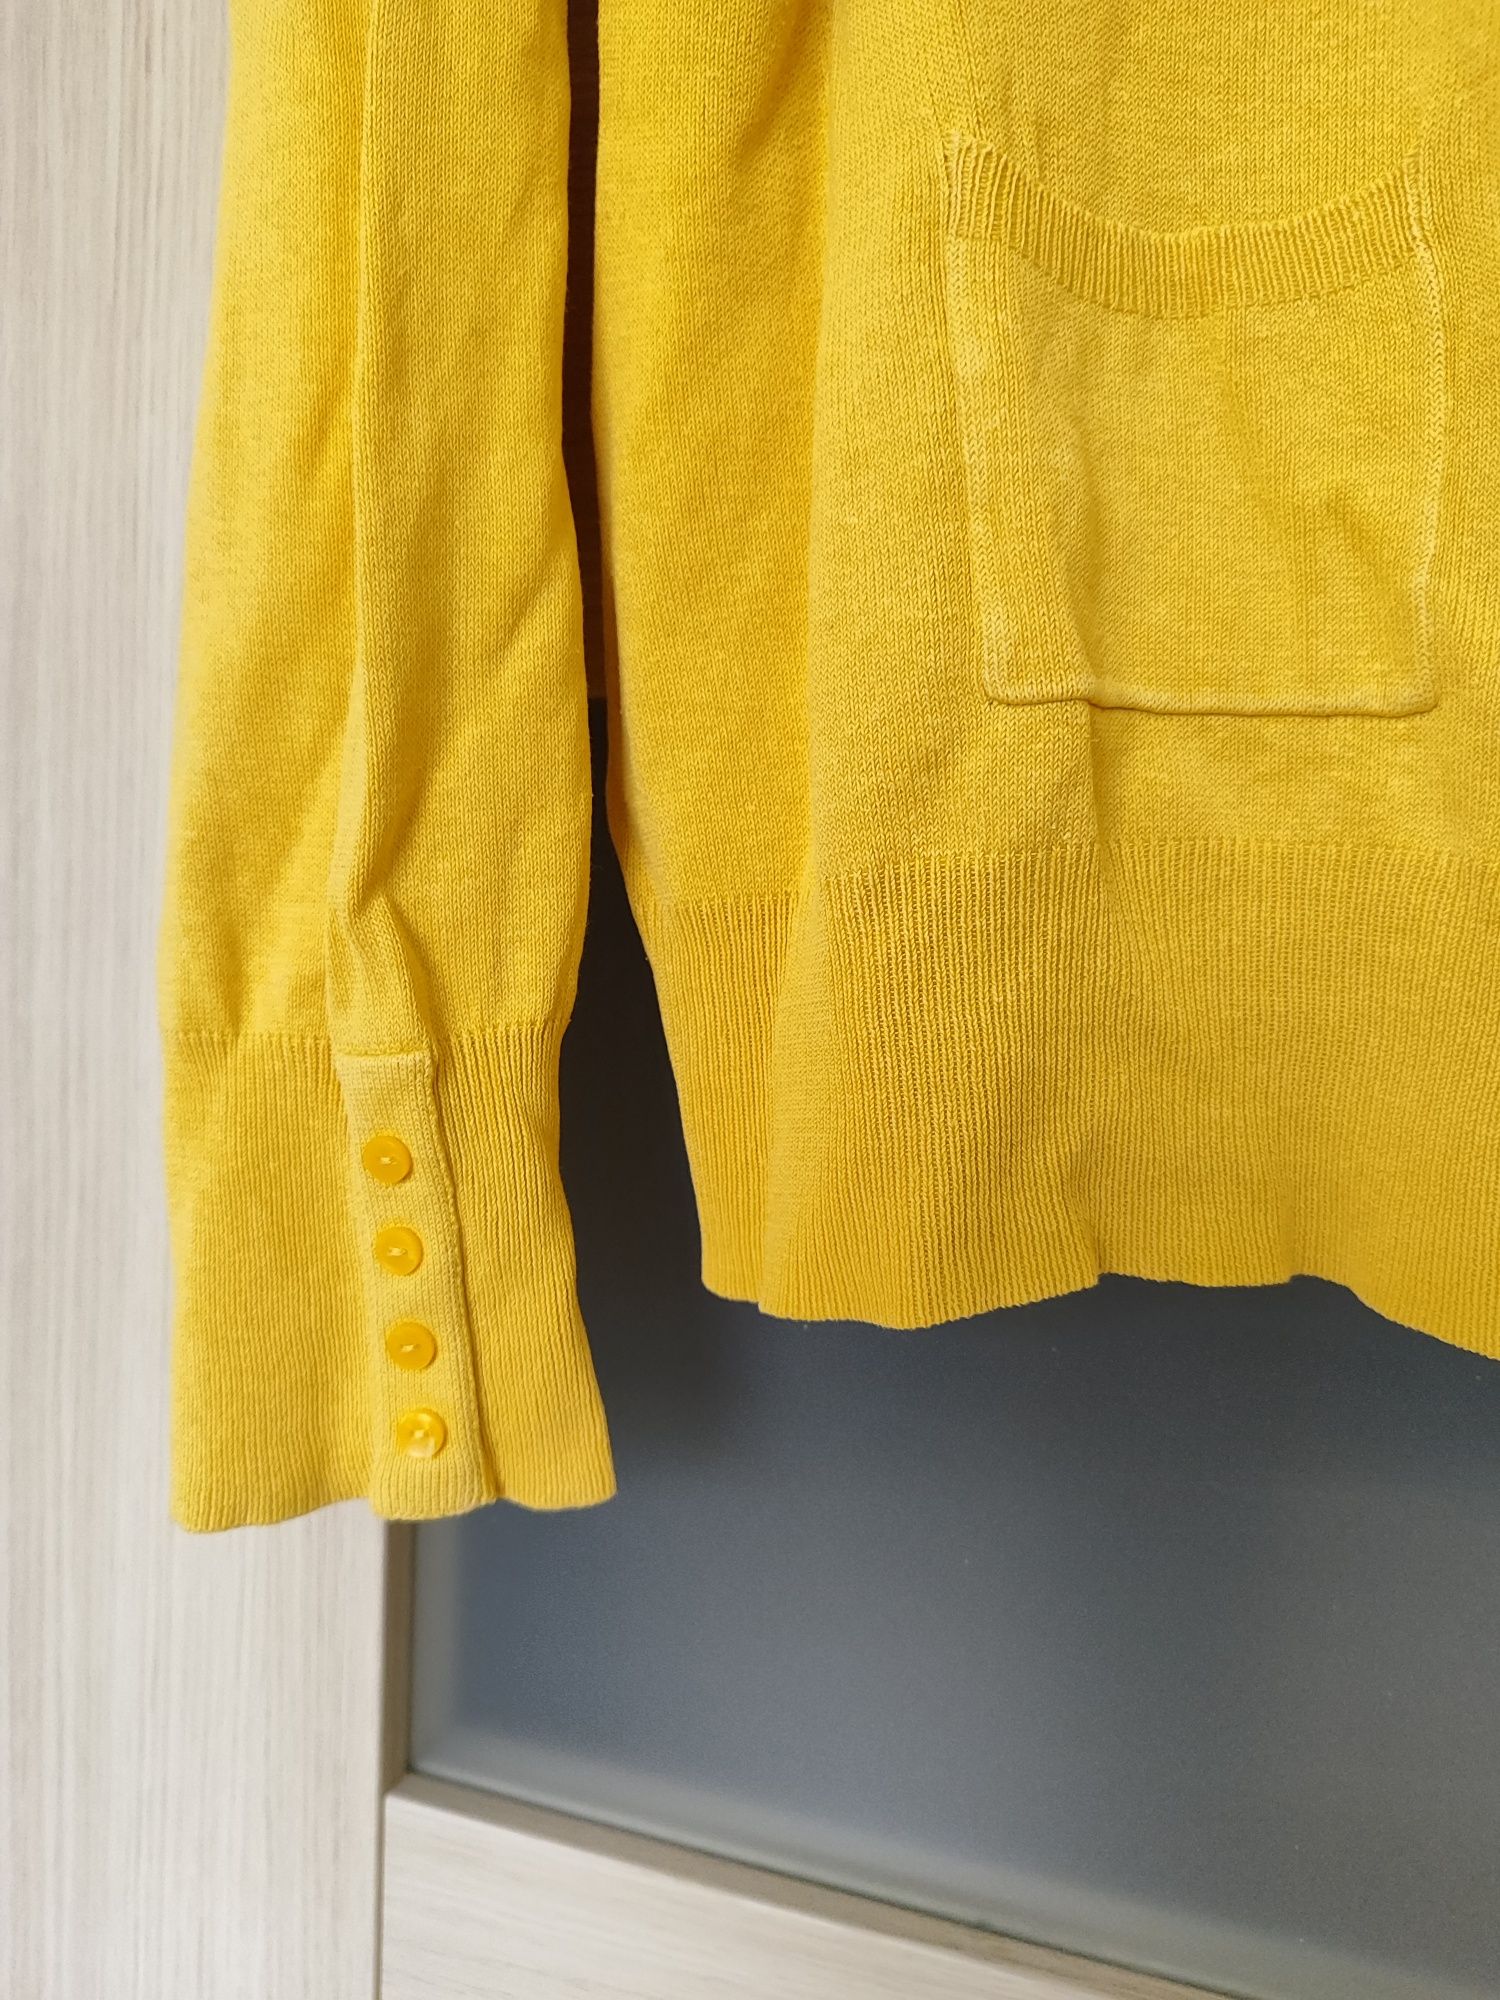 Musztardowy żółty kardigan sweter na guziki H&M rozmiar XXL 44